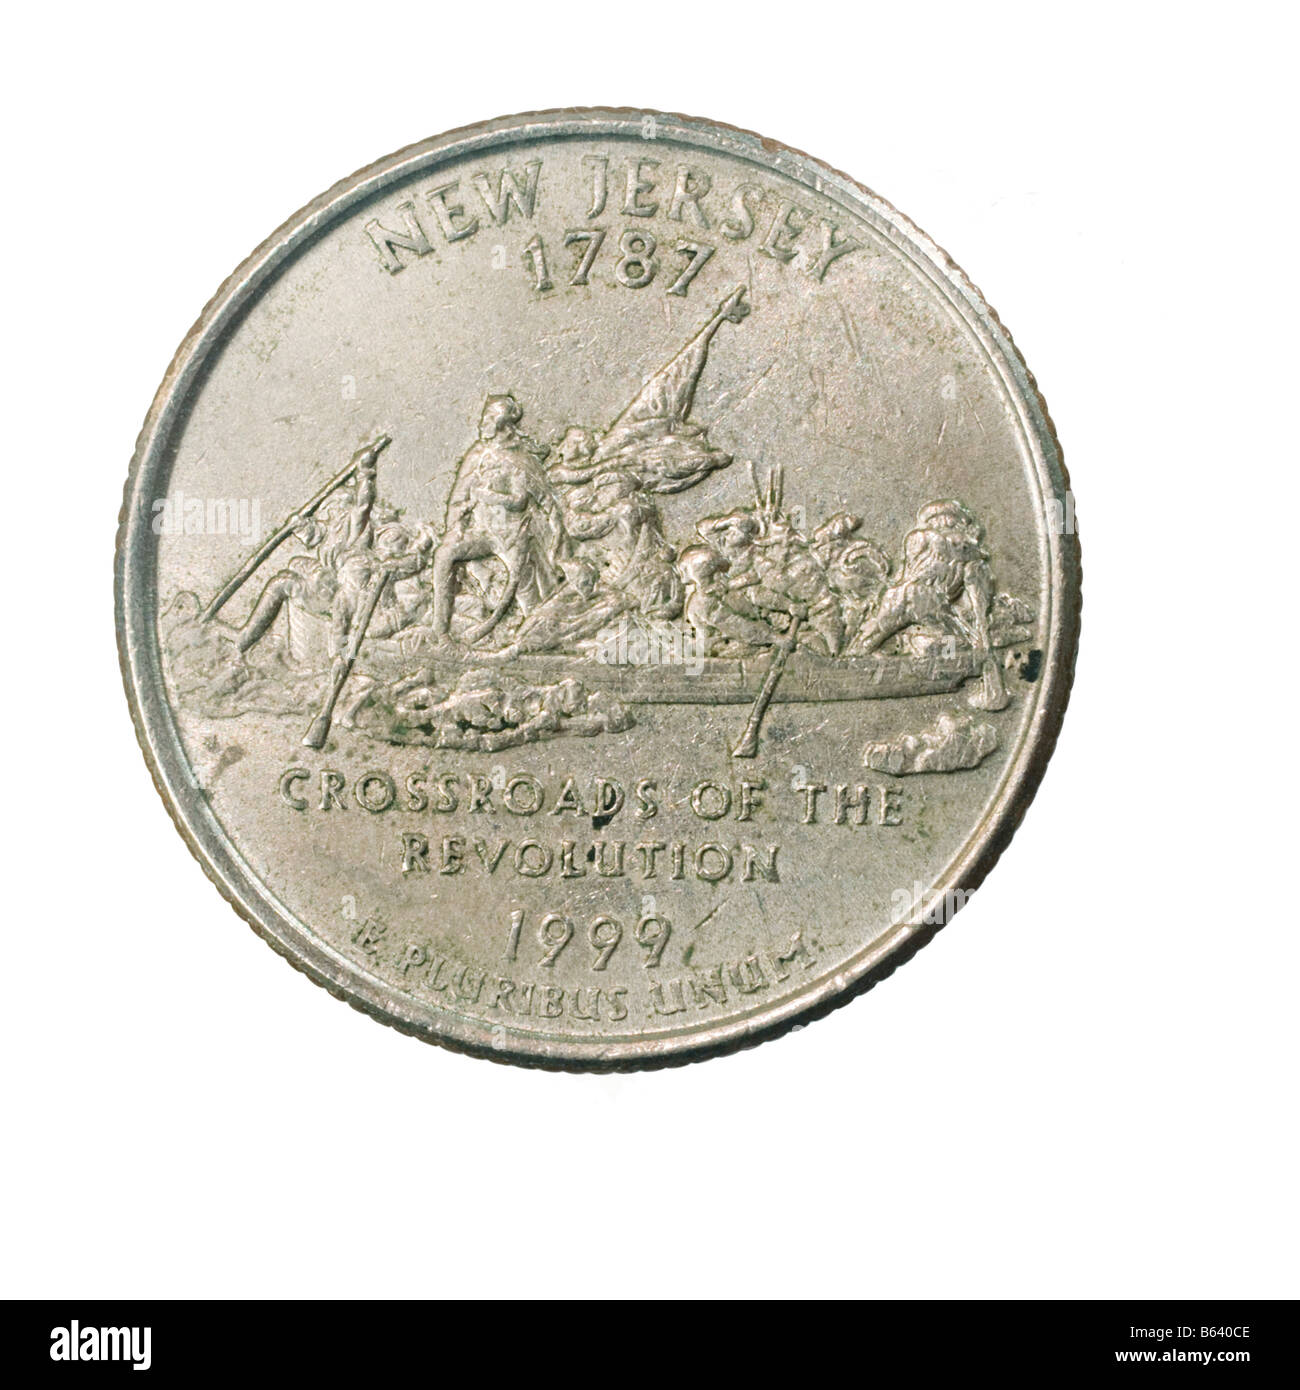 New Jersey decorate indietro di un quarto di dollaro moneta 25 centesimi isolati su sfondo bianco Foto Stock